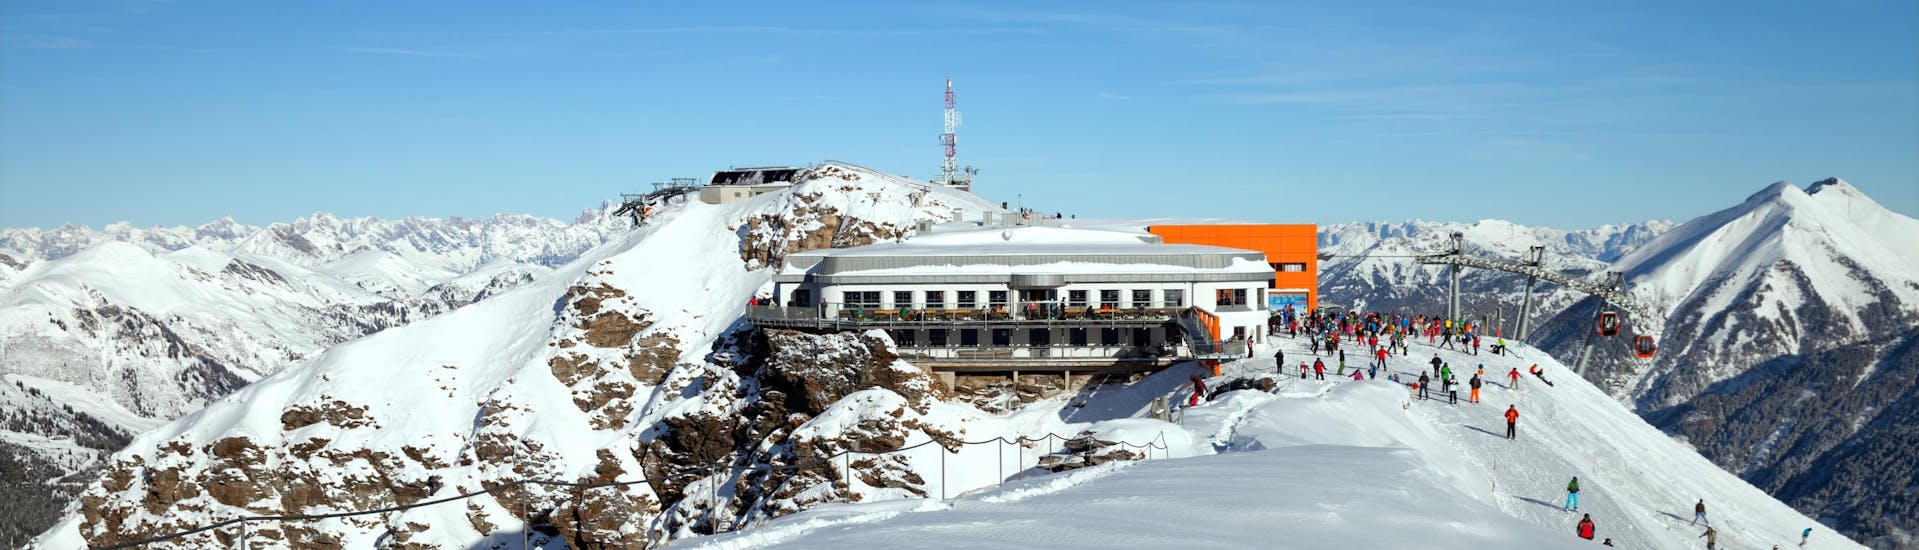 Adulti e bambini che sciano nella stazione sciistica di Bad Hofgastein.